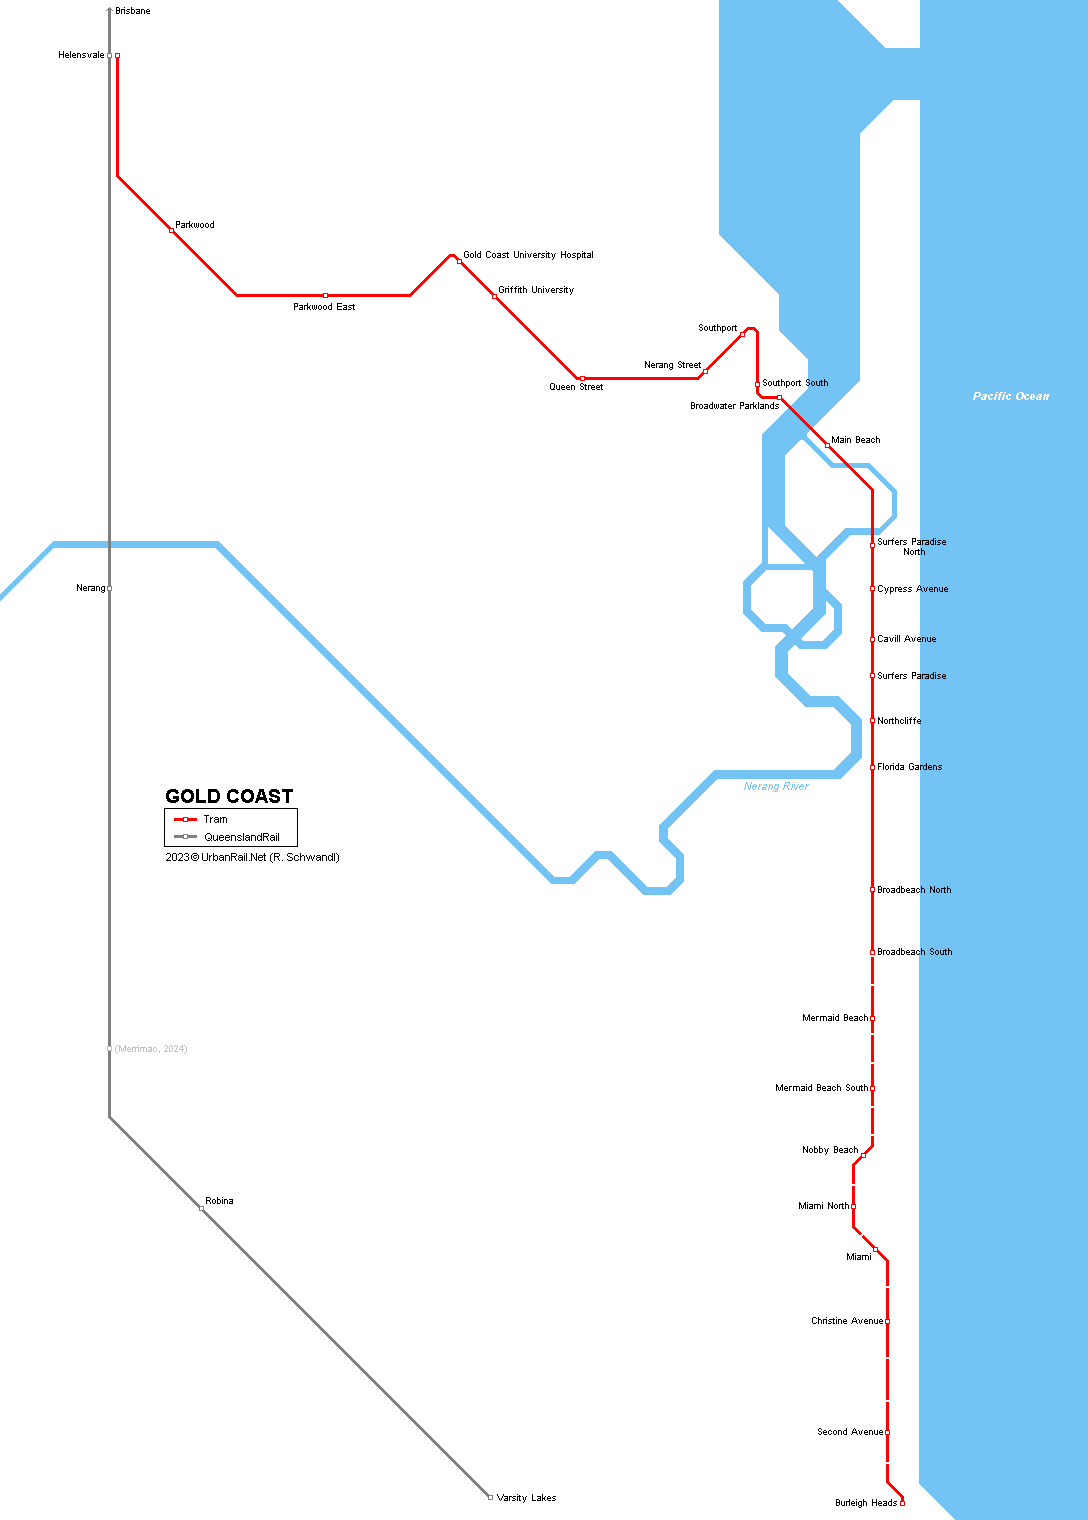 Plánek tramvajové tratě v australském Gold Coast